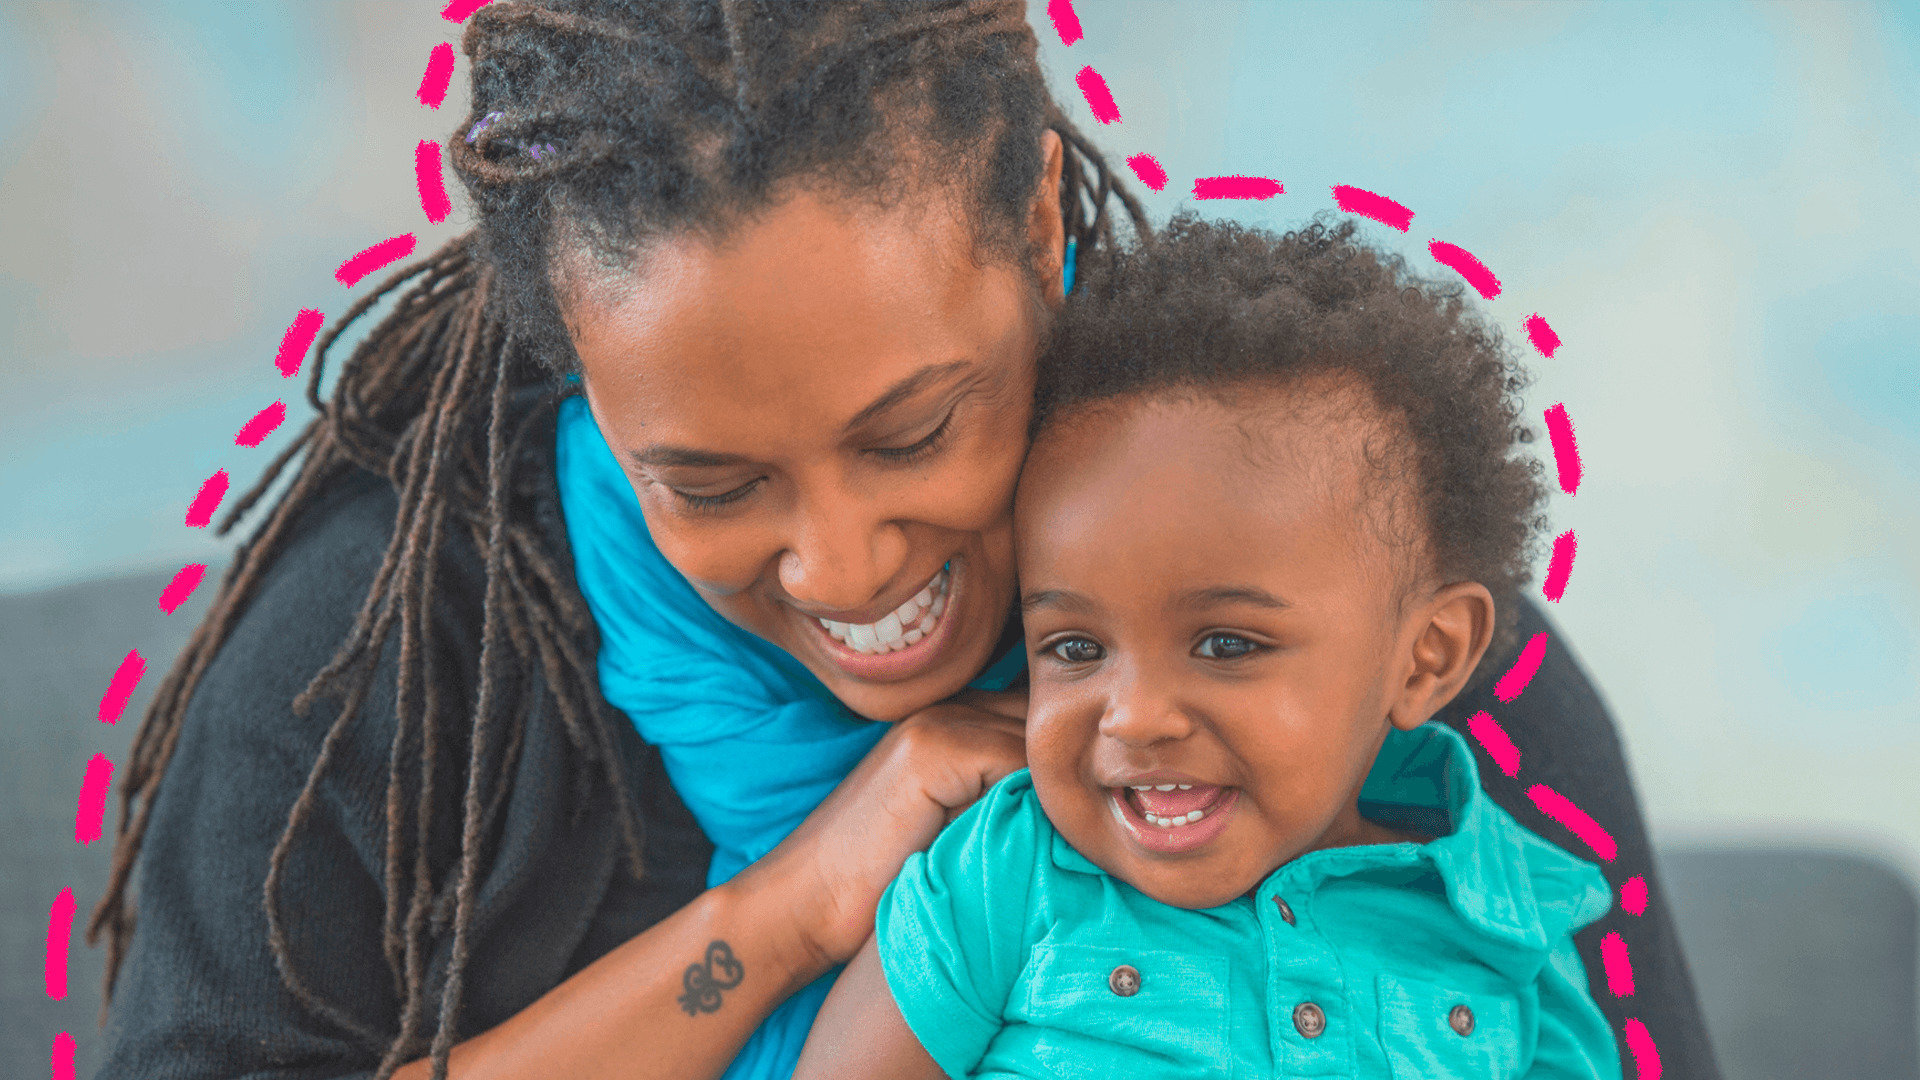 imagem de capa de matéria sobre o novo código civil mostra uma mulher negra, com cabelos dreads locks longos, sorridente e segurando no colo um bebê menino negro que também sorri